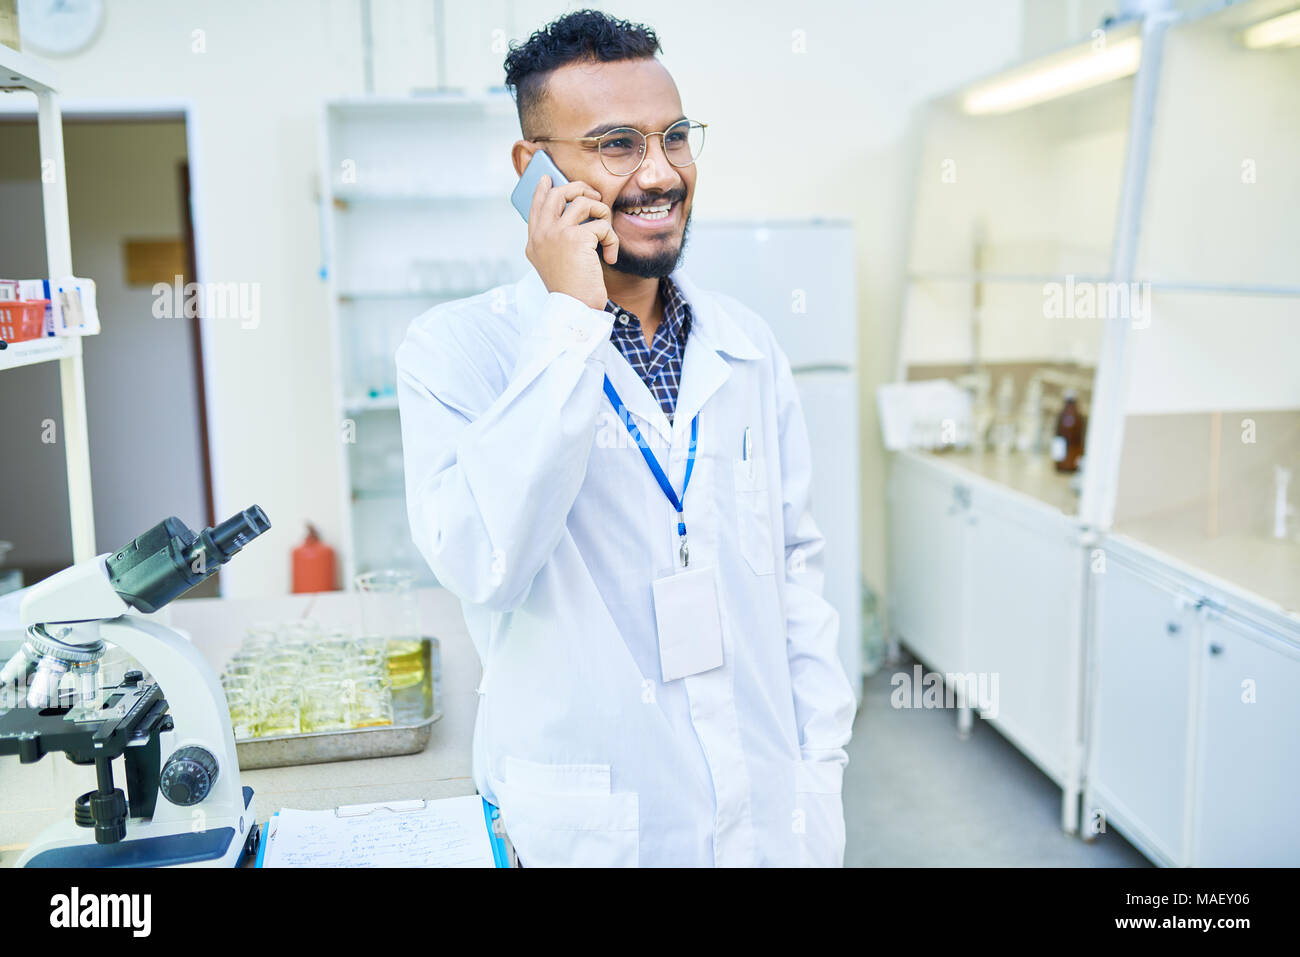 Arabian extatique doctor talking on phone Banque D'Images